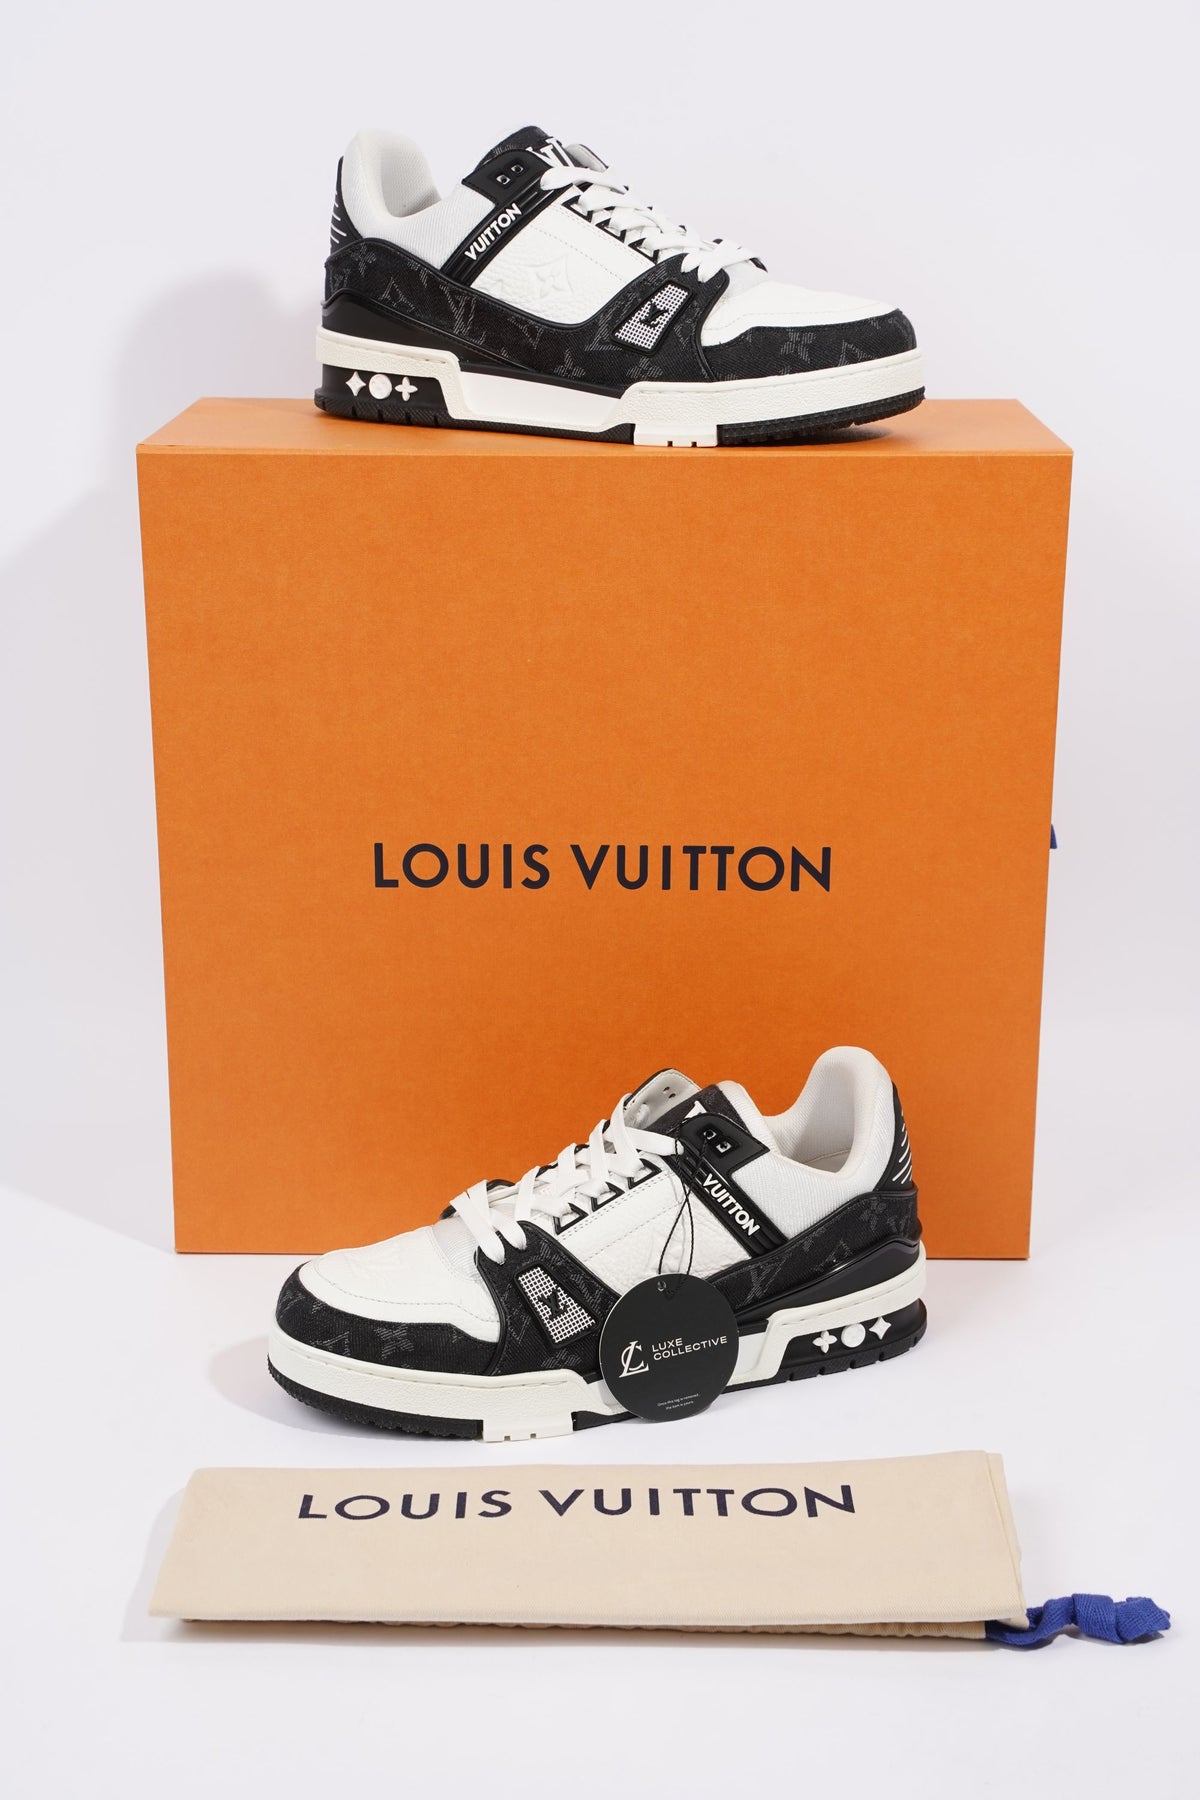 Louis Vuitton Mens Virgil Abloh Black / Denim EU 40.5 / UK 6.5 – Luxe  Collective